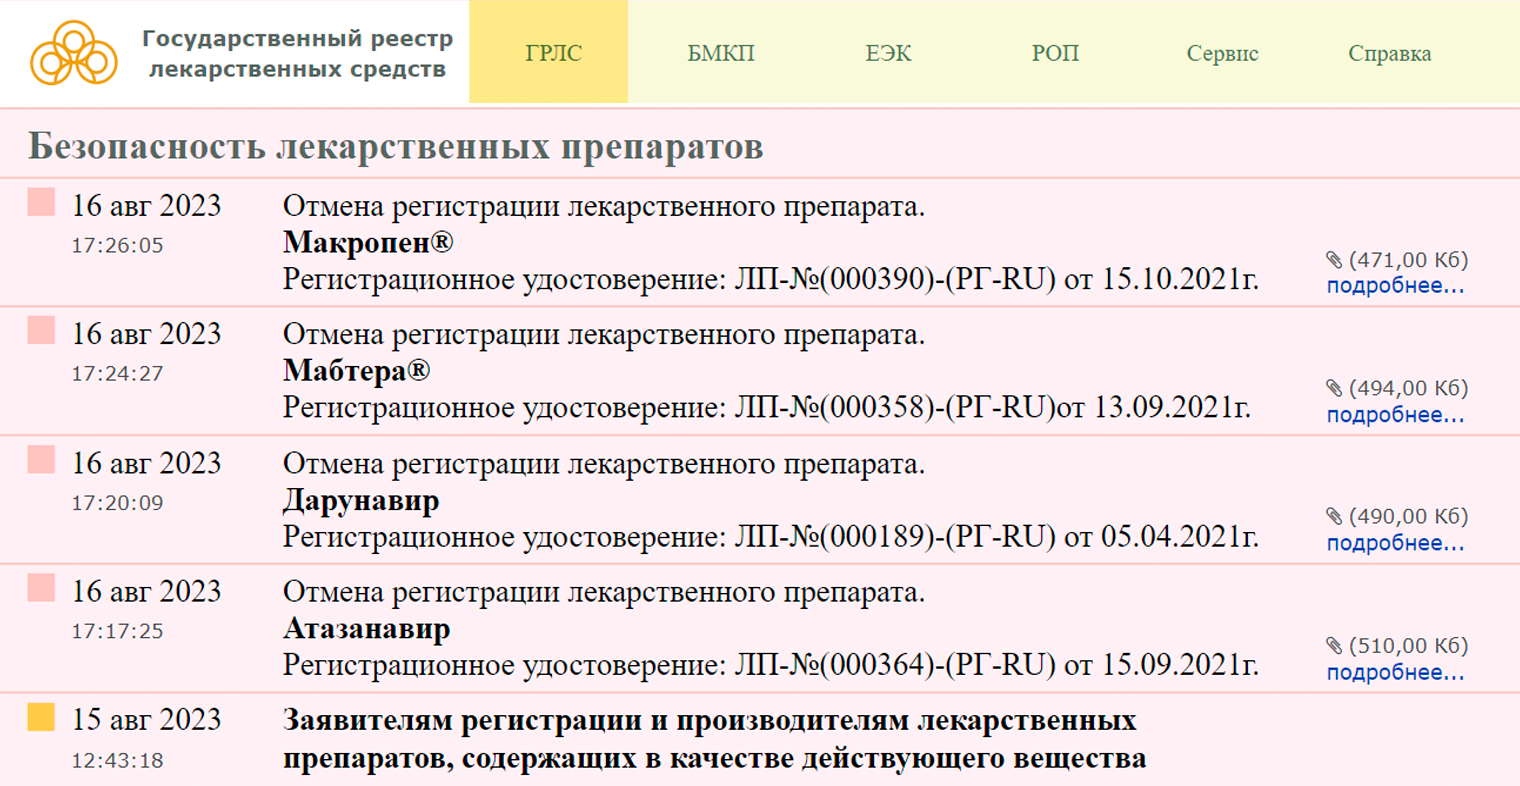 Шаг 1. По ссылке или через поиск перейдите на главную страницу сайта, нажмите на ГРЛС в верхнем левом углу страницы. Источник: grls.rosminzdrav.ru